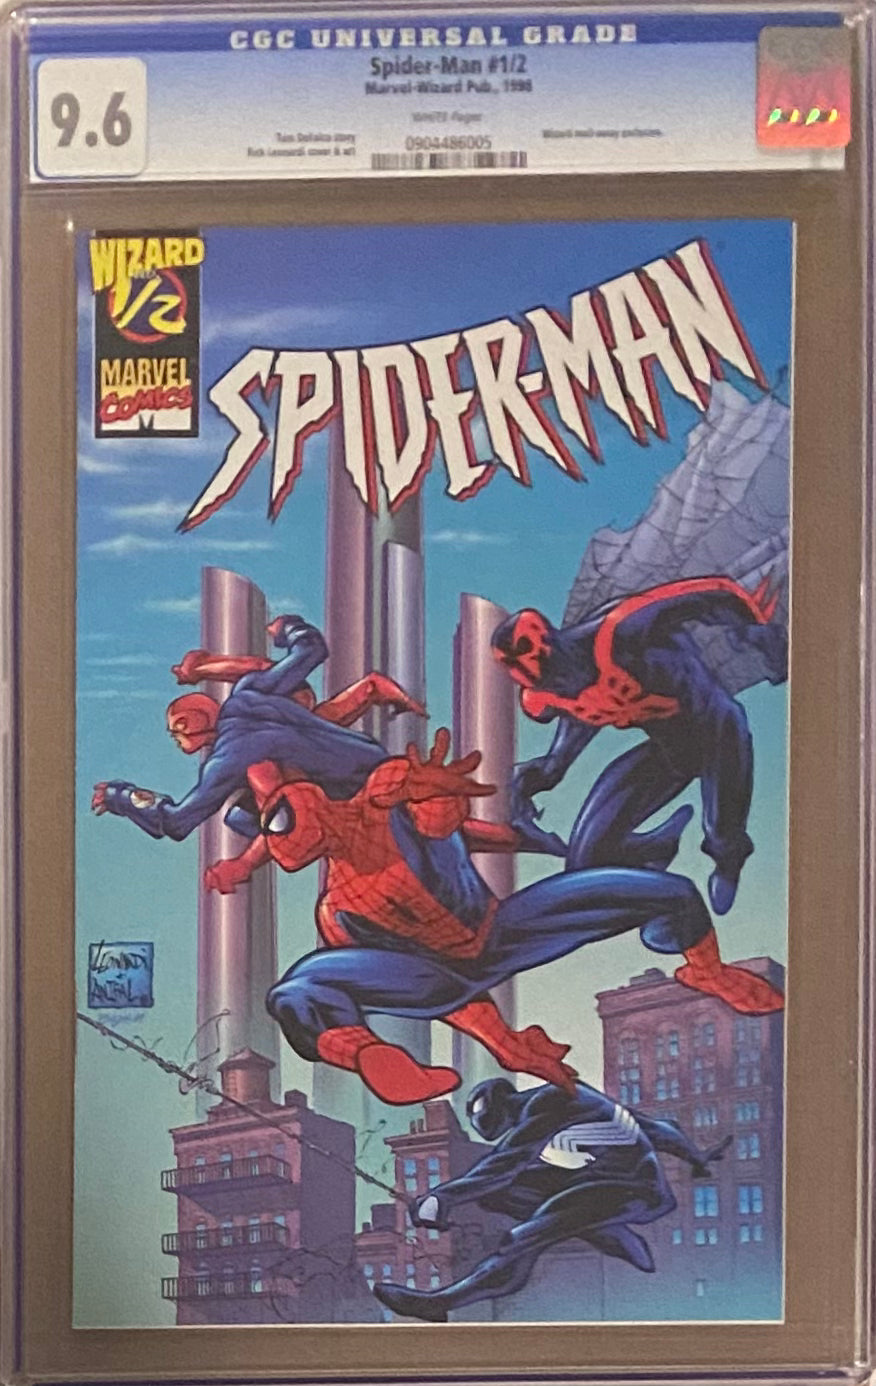 Spider-Man #1/2 CGC 9.6